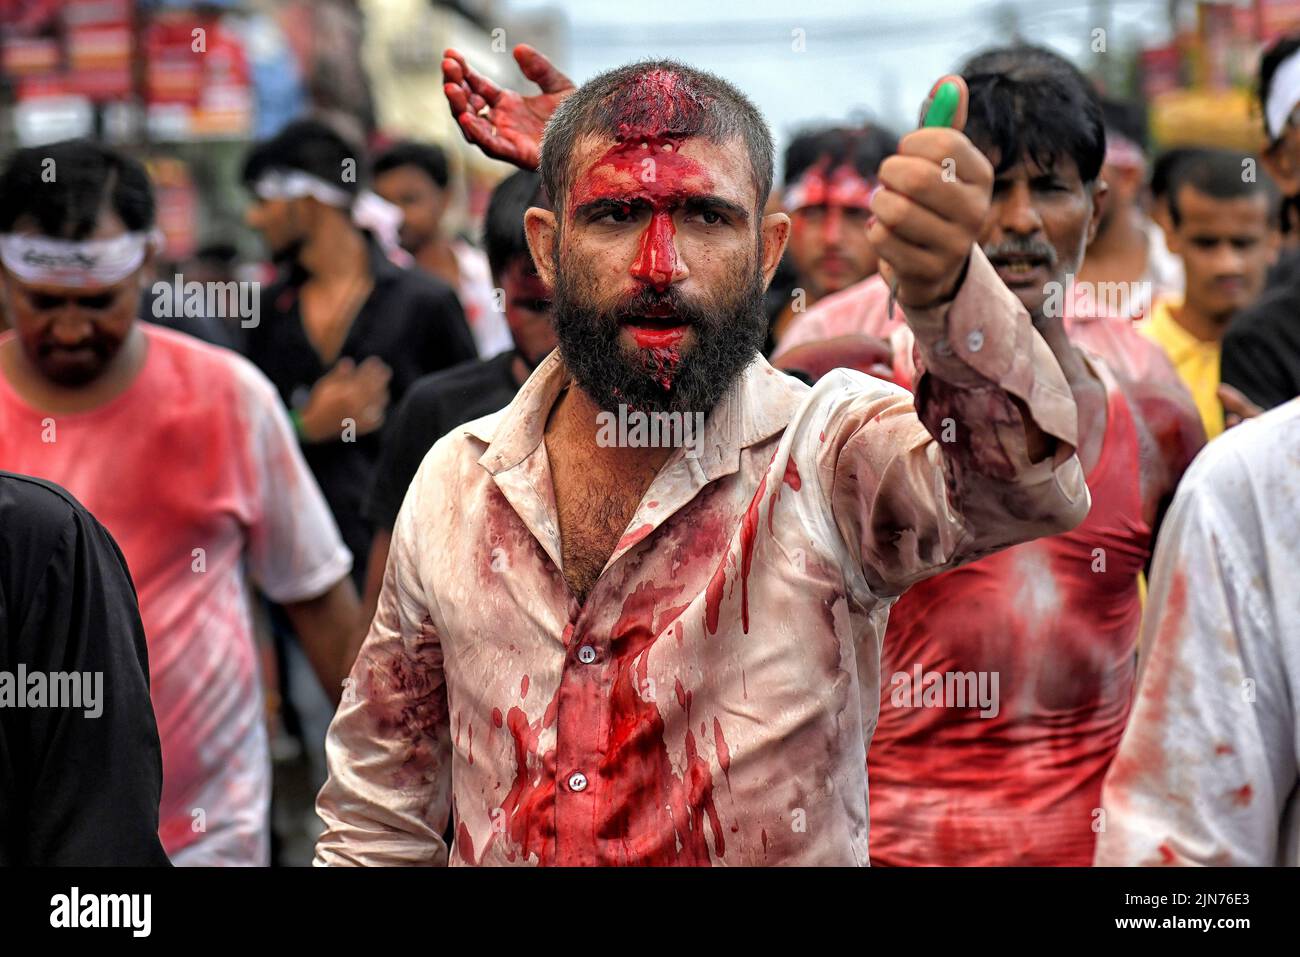 (NOTA DEL EDITOR: La imagen contiene contenido gráfico.) Los musulmanes chiítas cubiertos de sangre golpearon sus pechos y cabezas con espadas y espadas durante la procesión de Muharram en Kolkata. Muharram es el primer mes del calendario islámico y Ashura es el décimo día del mes de Muharram en el que se celebra la conmemoración del martirio del imán Hussain, nieto del profeta Mahoma (PBUH), durante la batalla de Karbala. Es parte del duelo por los musulmanes chiítas y un día de ayuno para los musulmanes sunitas que se observa en todo el mundo. Foto de stock